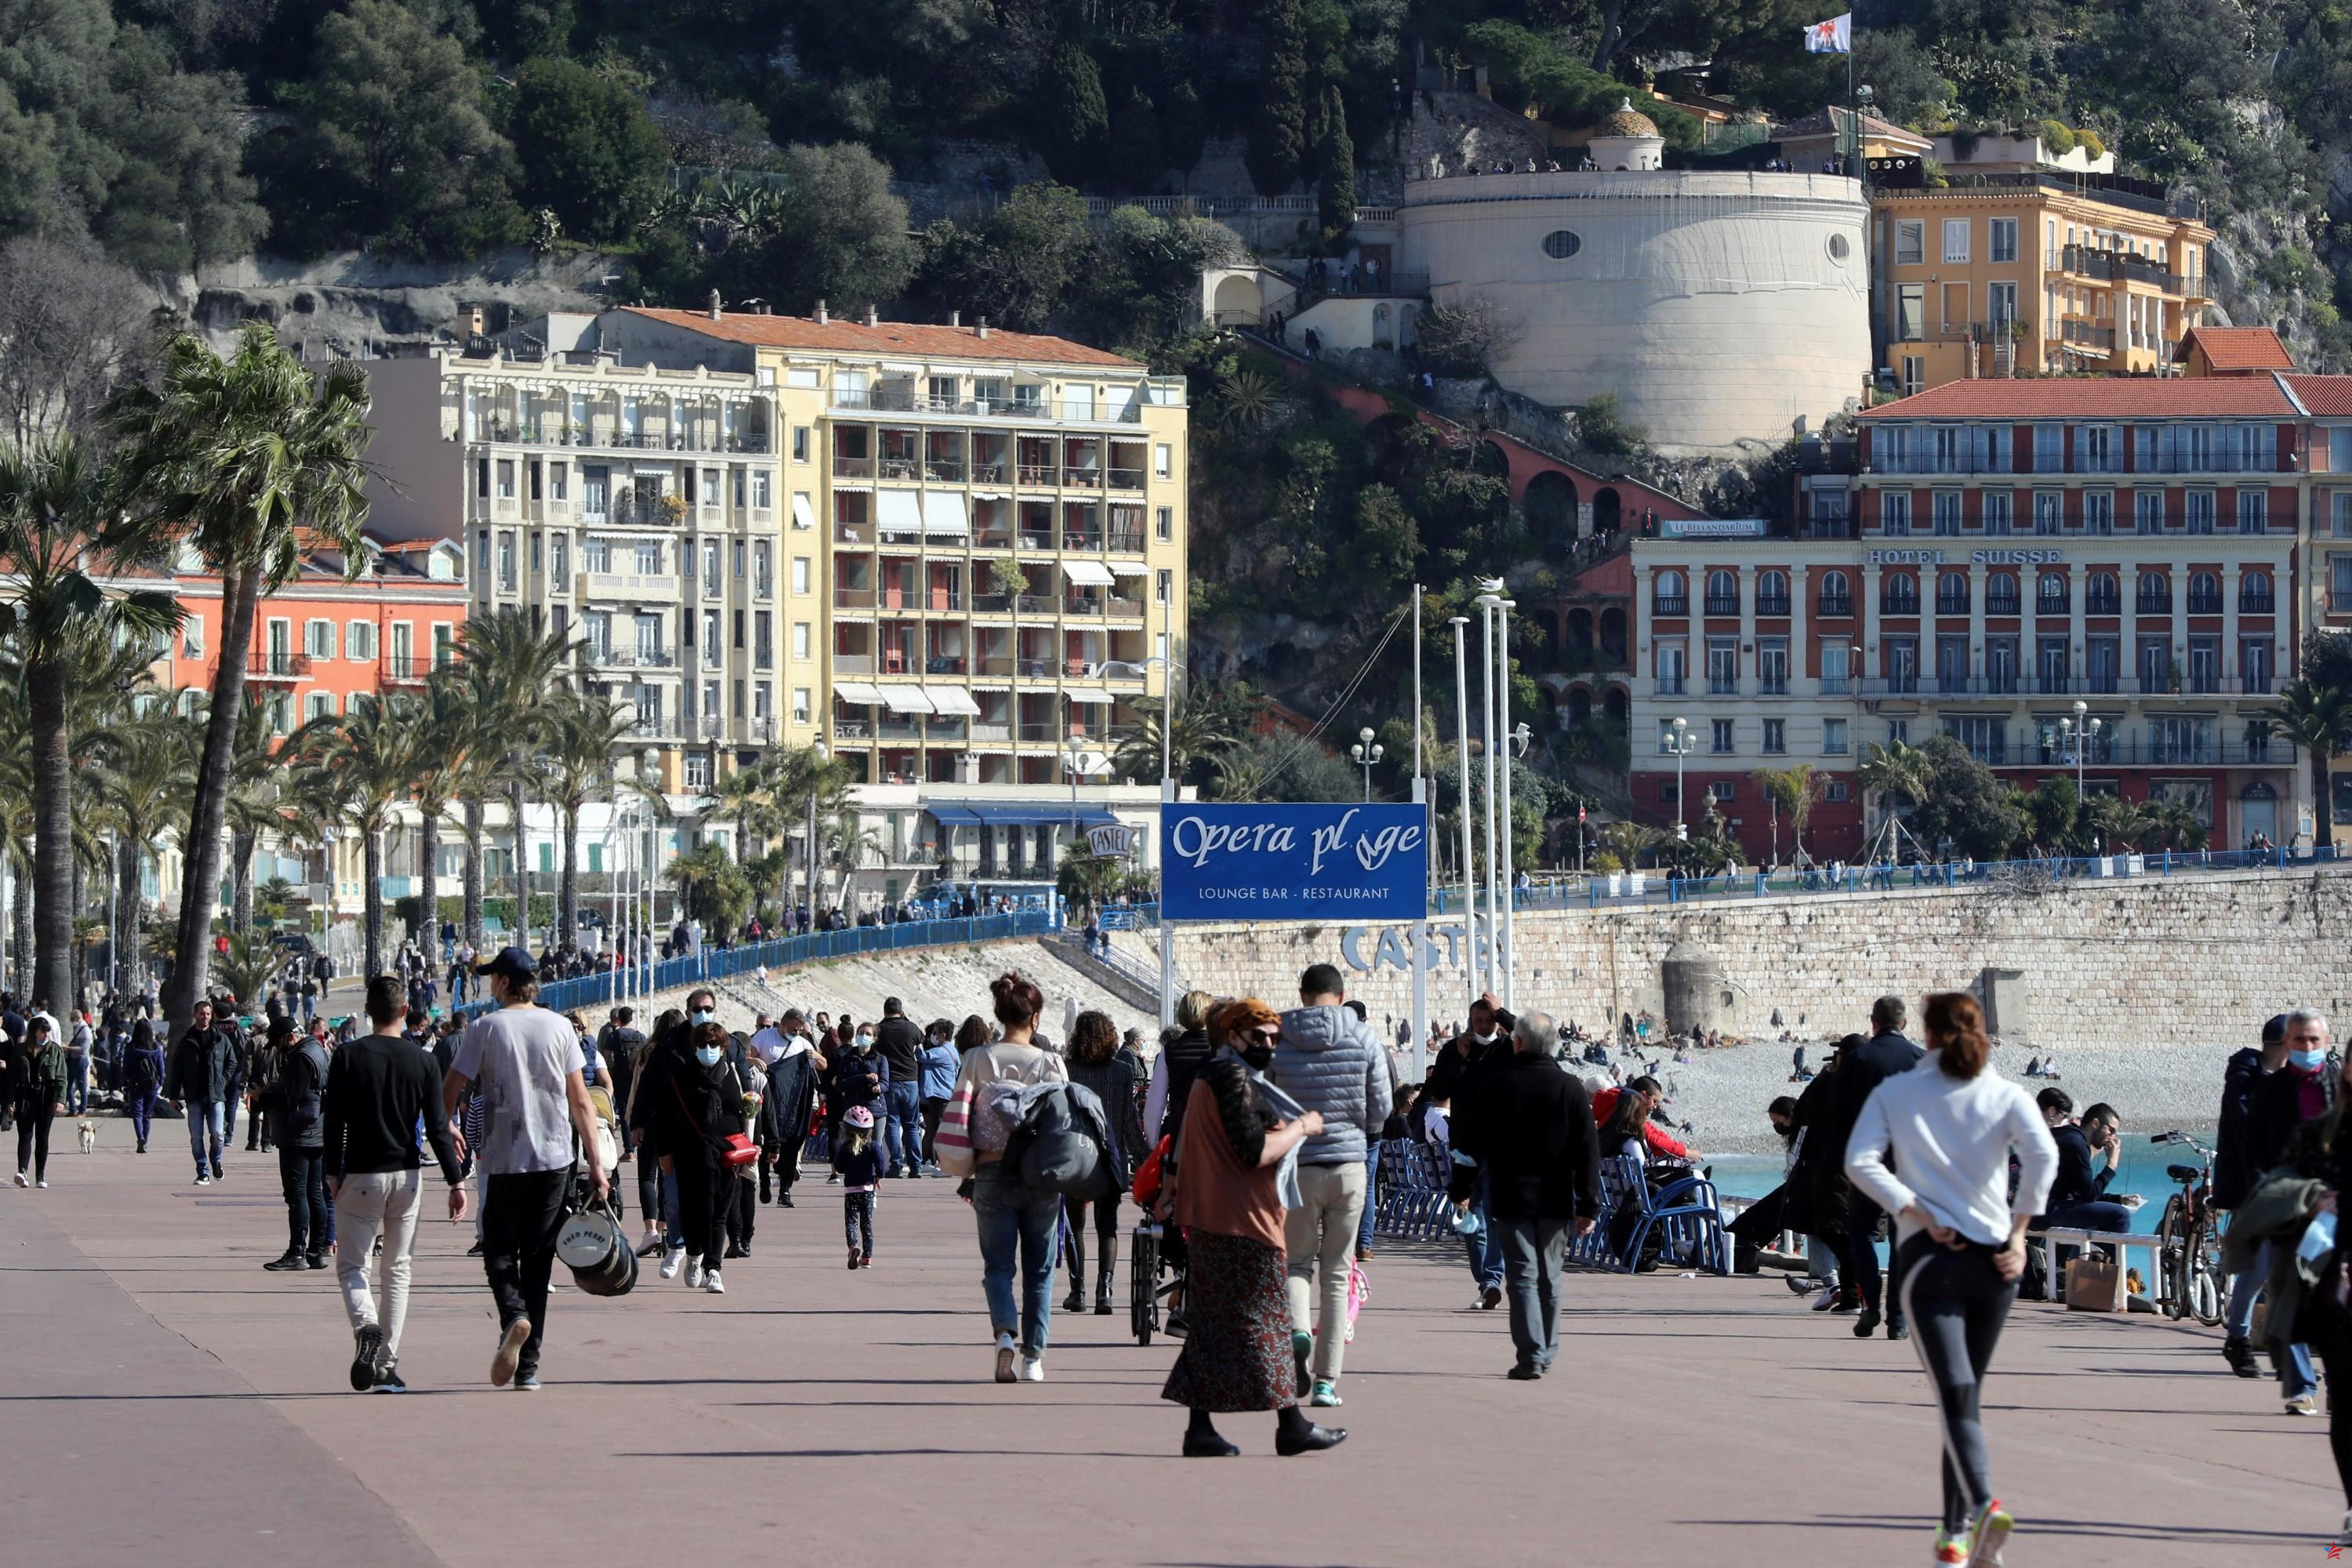 Olores nauseabundos en Niza: una empresa de pavimentos señalada